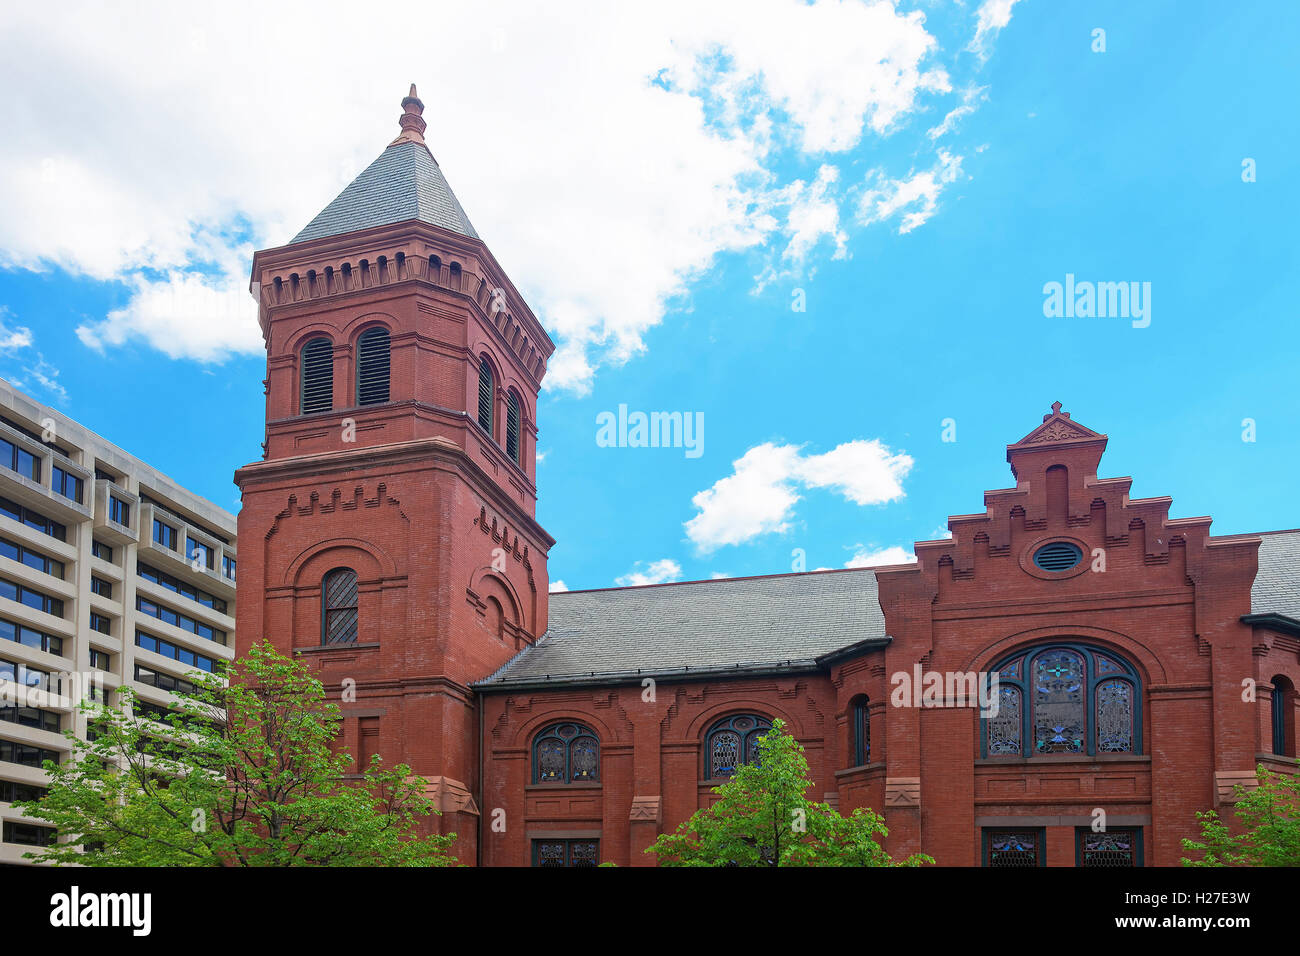 Église évangélique allemande de Concordia et le presbytère est situé à Washington D.C., USA. Il est souvent désigné comme l'Église Unie. Il a été construit en 1833 et reconstruit en 1932. Banque D'Images